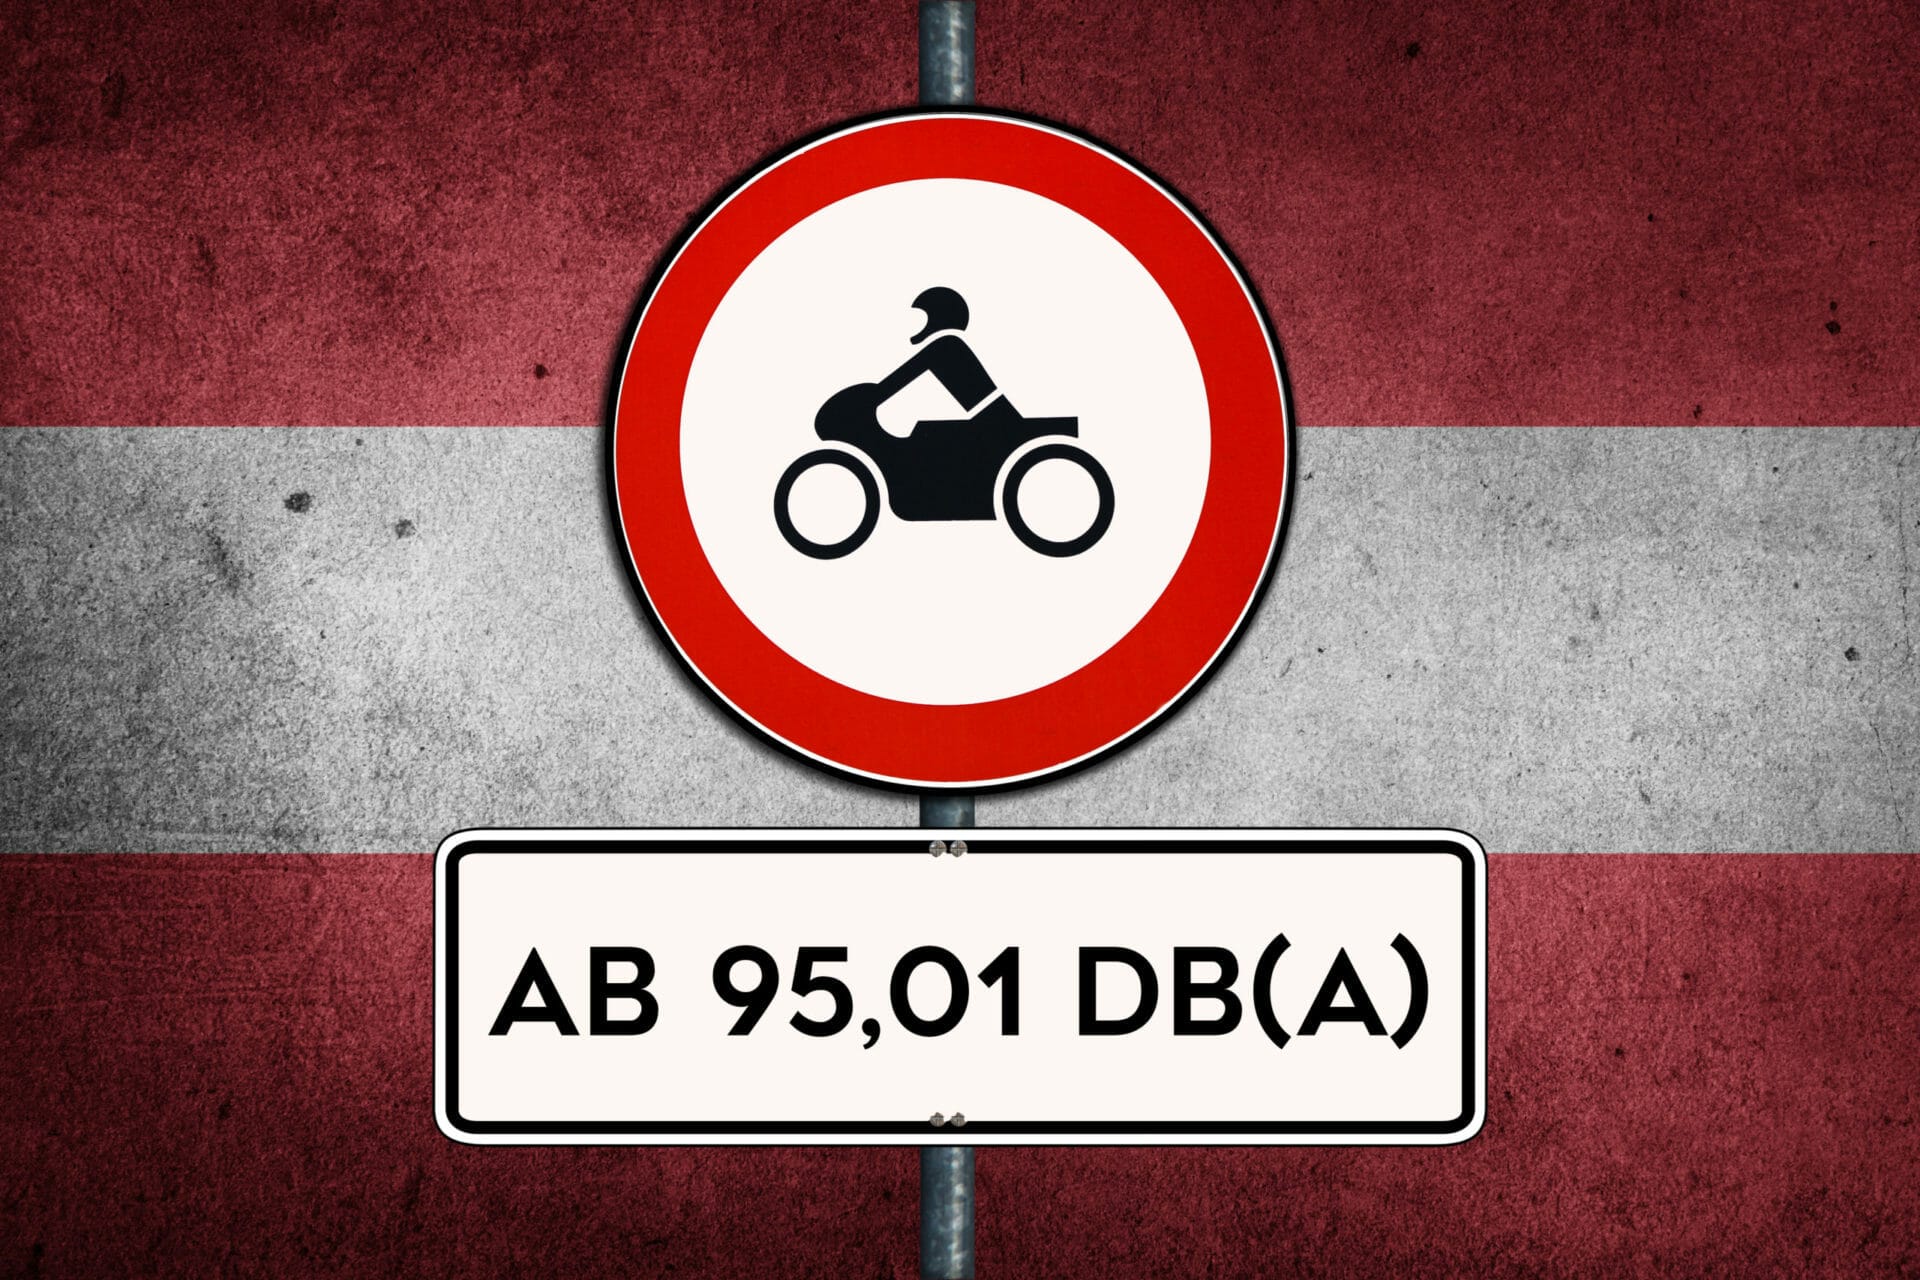 Beschwerde wegen Motorradlärmverordnung in Tirol von der EU abgewiesen
- auch in der MOTORRAD NACHRICHTEN APP